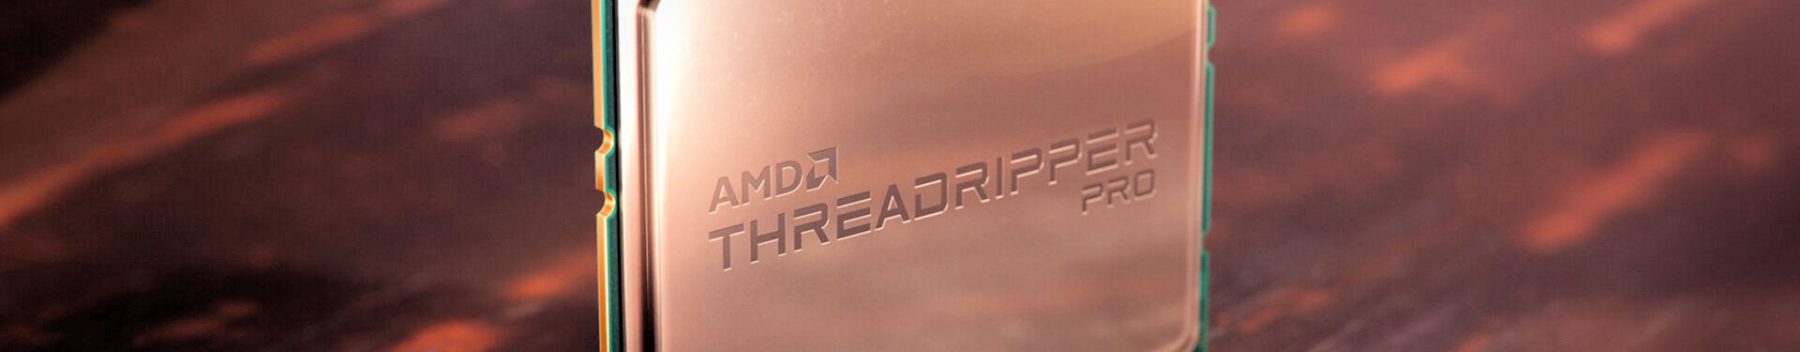 AMD는 SATA-IO 파일링을 통해 ThreadripperPRO5000WX 시리즈를 확인, 시보드 블로그